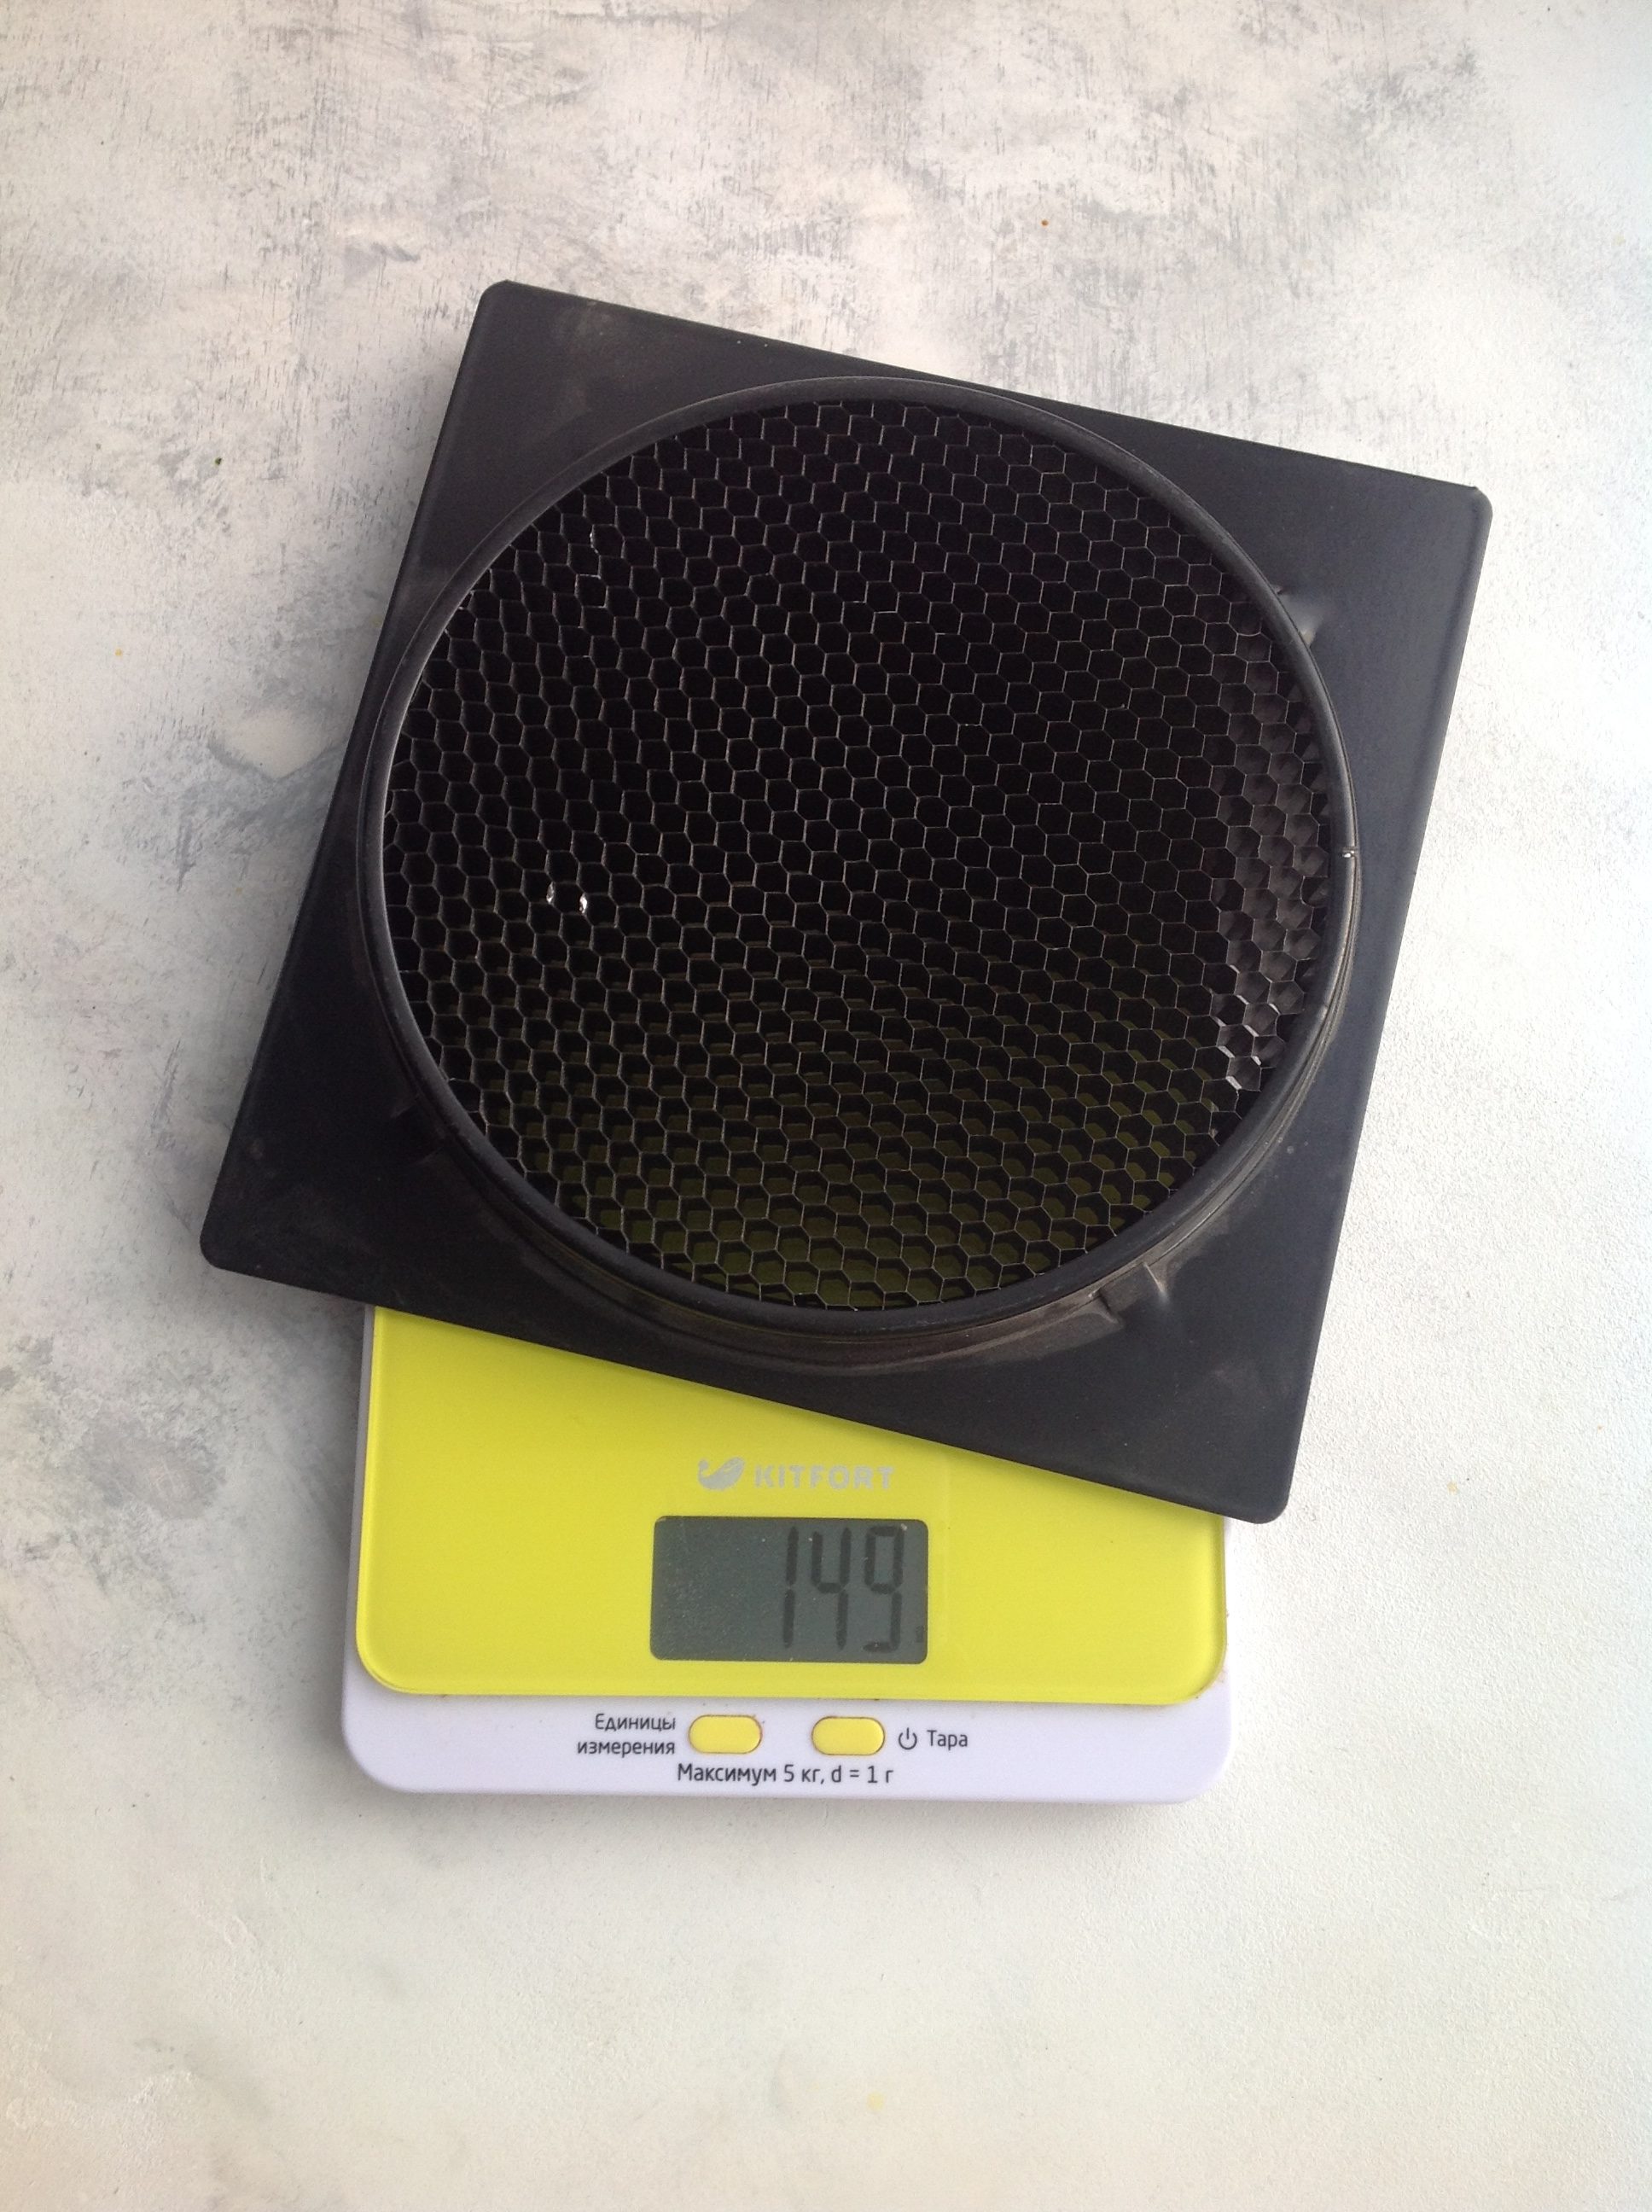 вес насадки соты для студийного светового оборудования